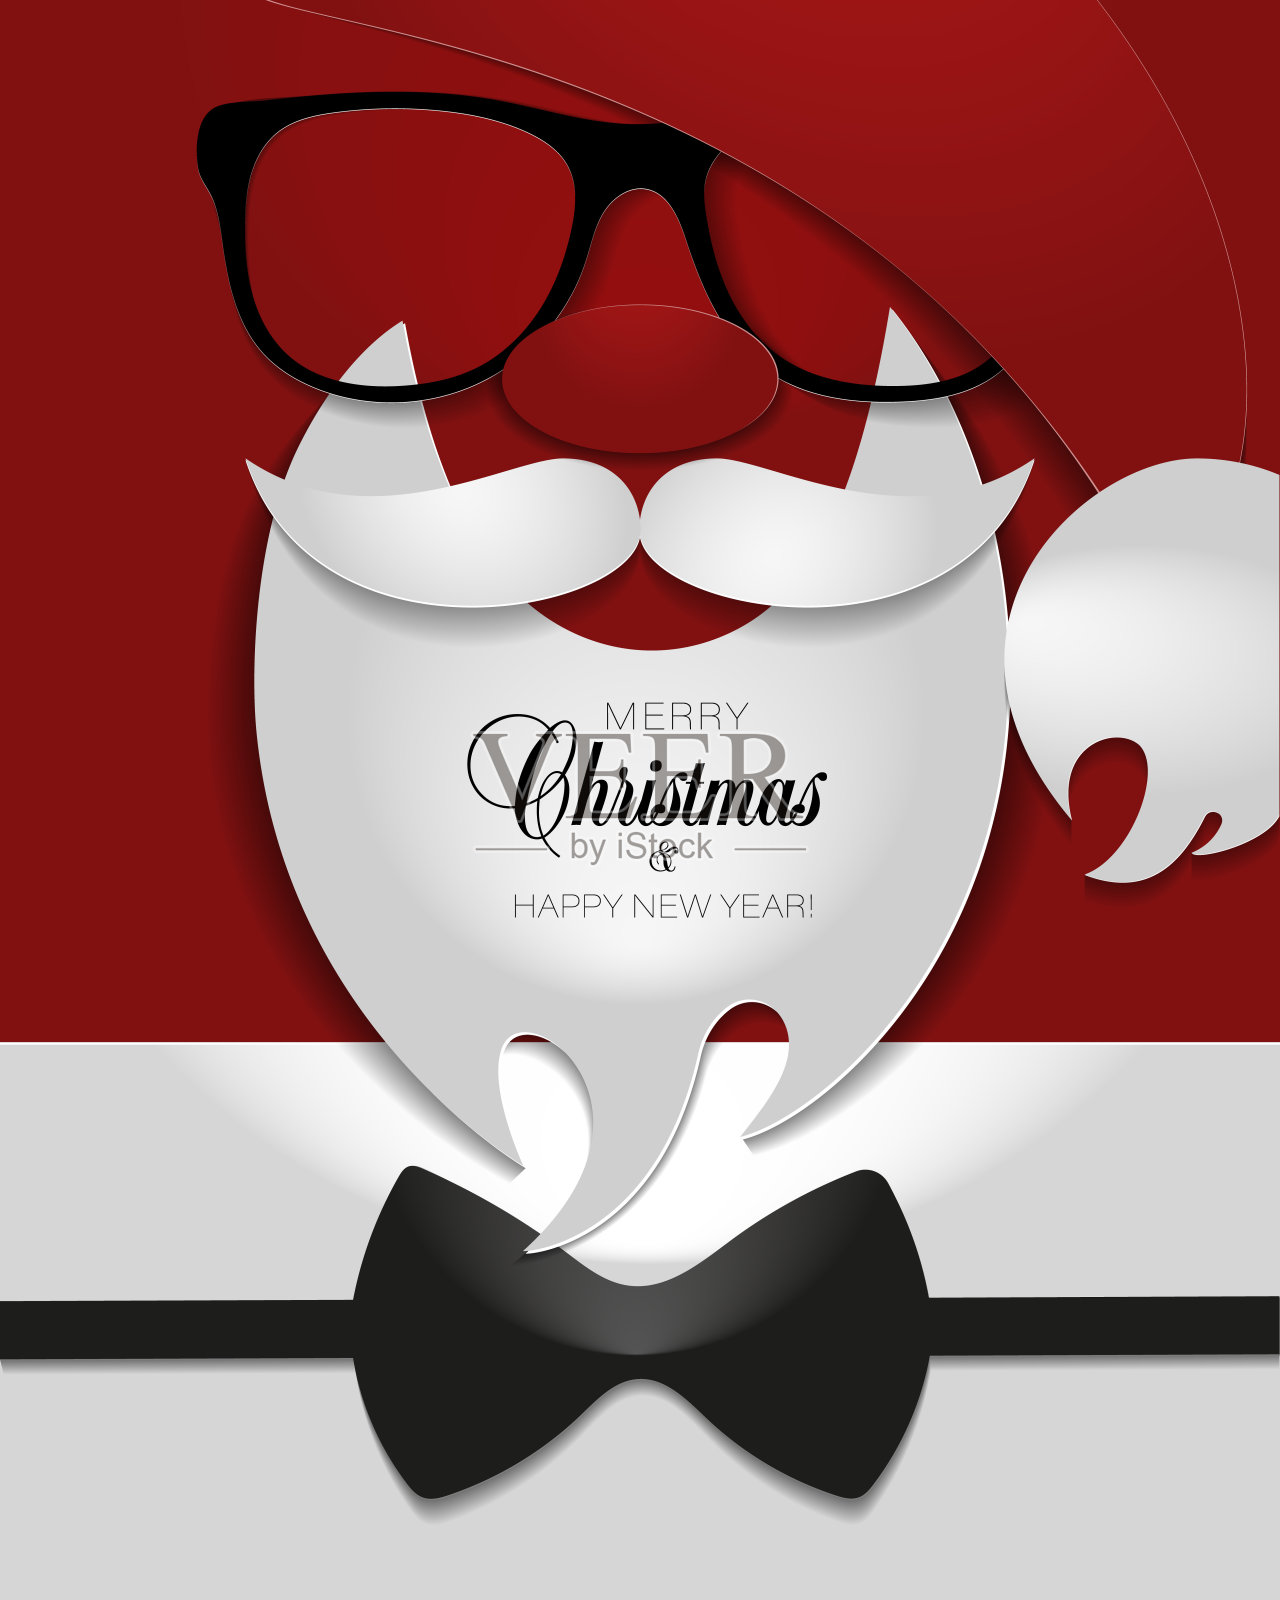 真圣诞老人白胡子画像 库存图片. 图片 包括有 冻结, 父亲, 毛皮, 帽子, 情感, 仁慈, 表面, 乐趣 - 162311769